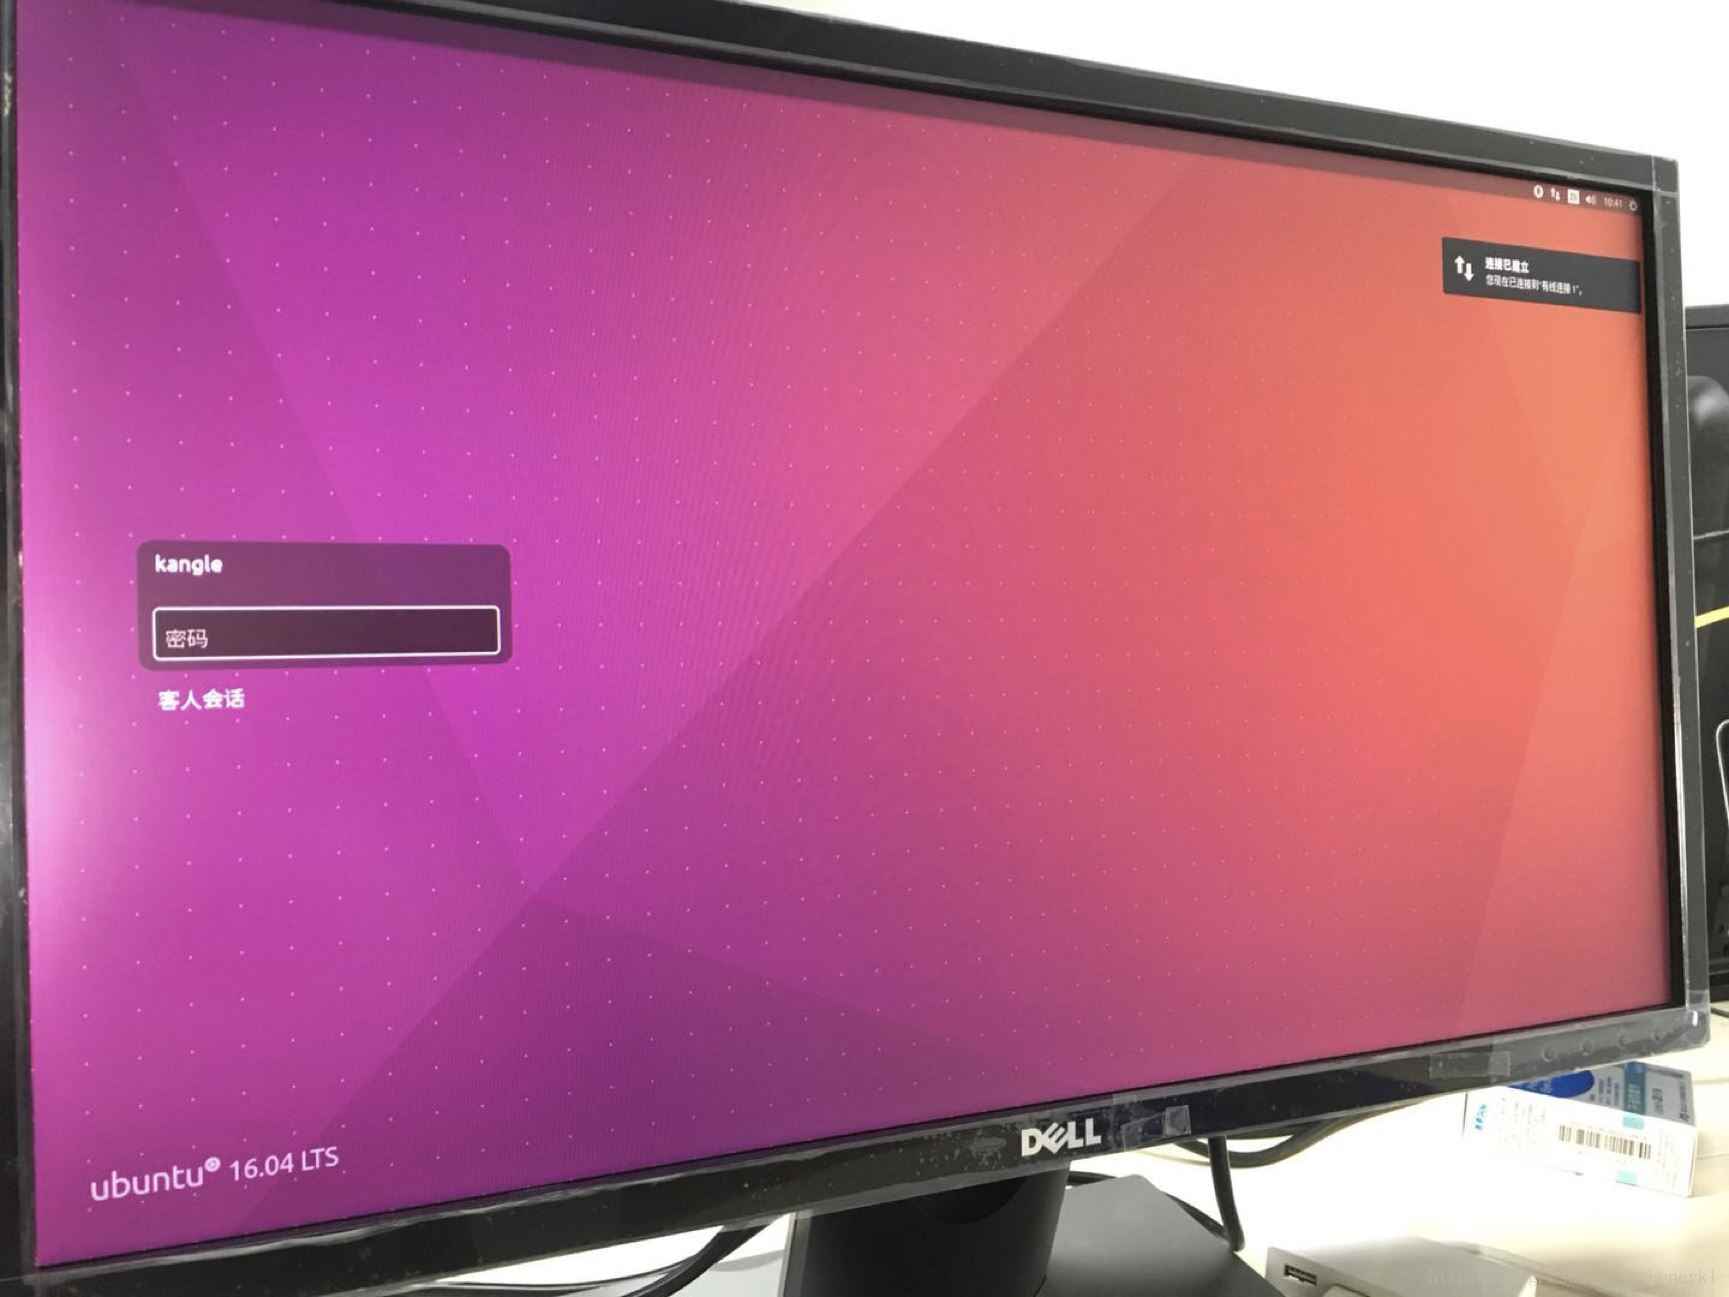 安装ubuntu时黑屏的解决办法(3种)